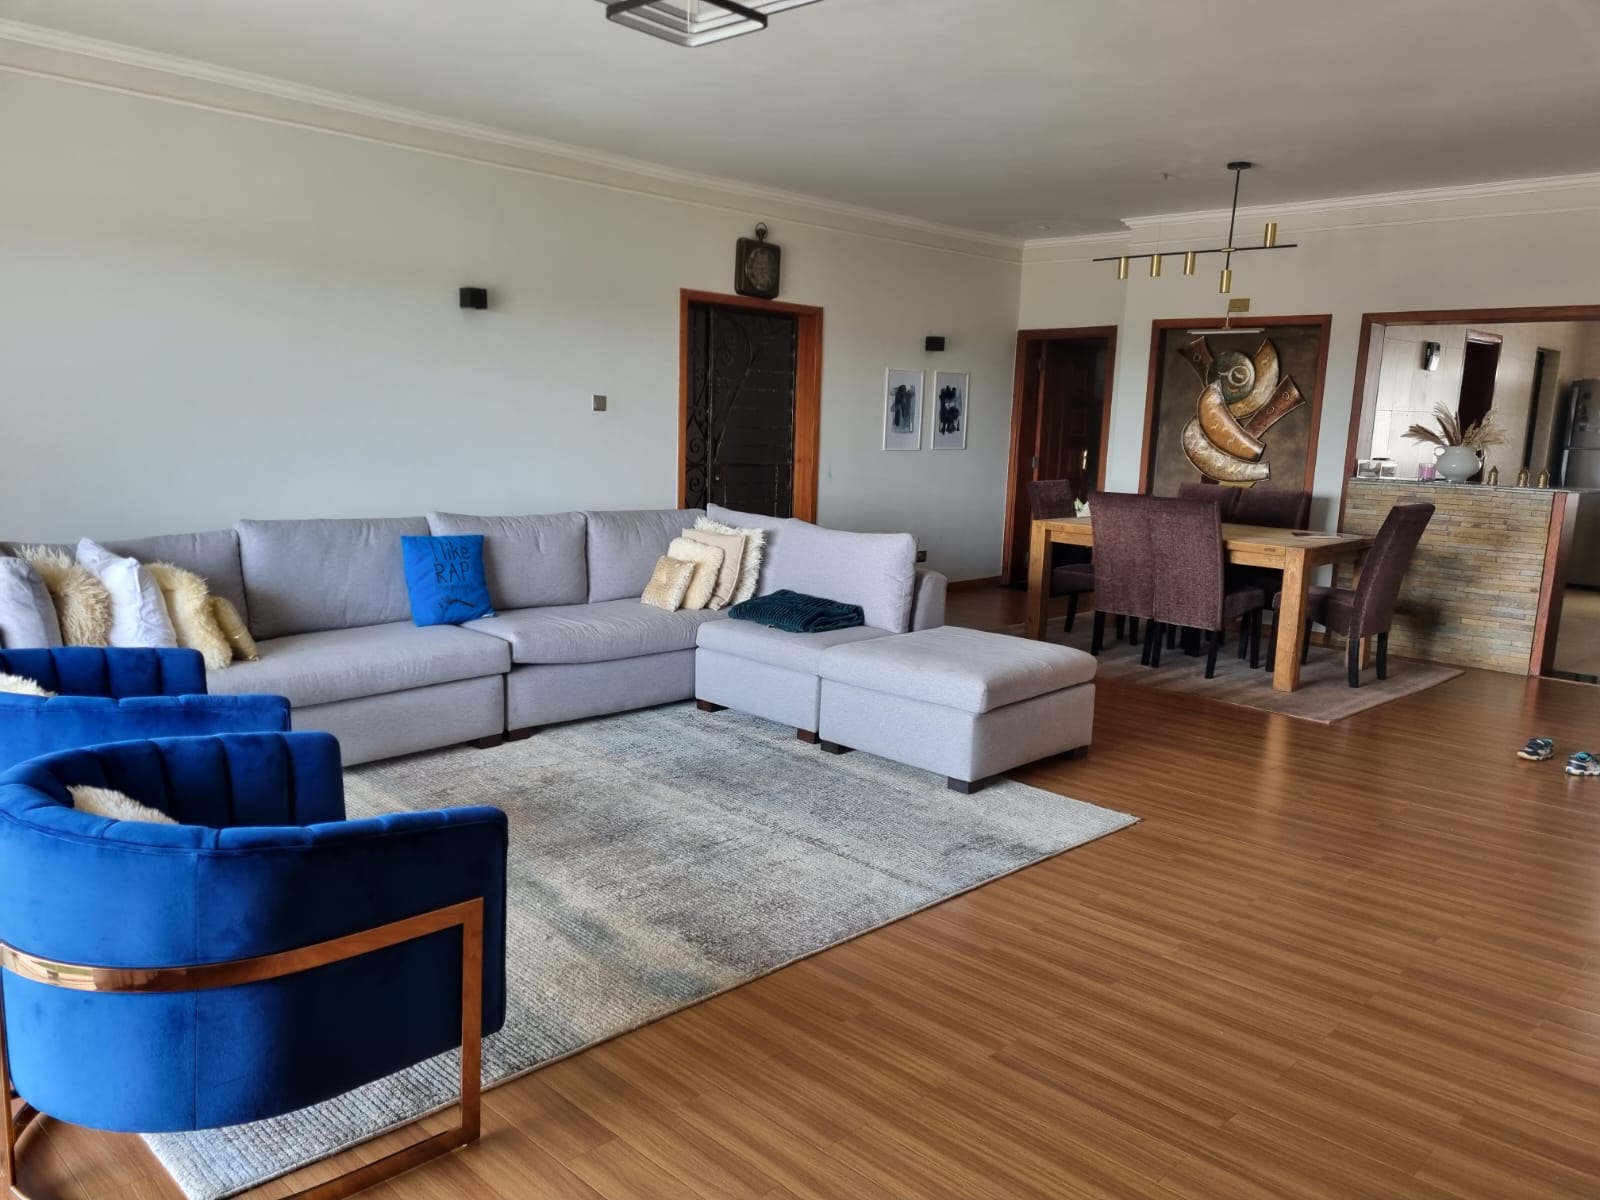 3 Bedroom All En-suite  Apartment in Kileleshwa